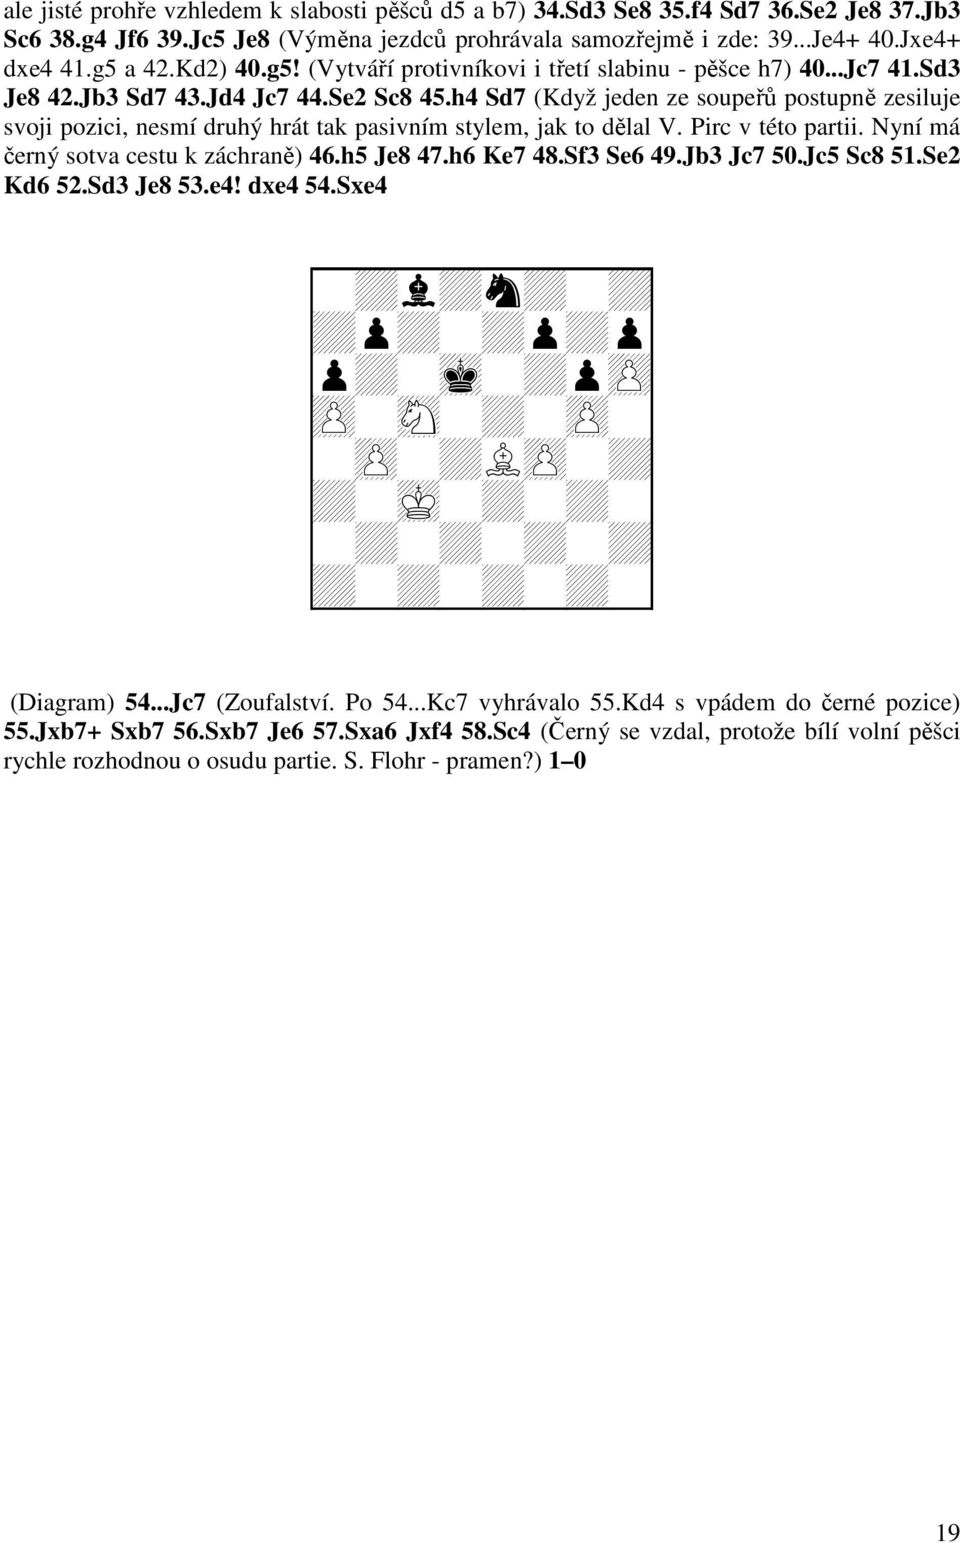 h4 Sd7 (Když jeden ze soupeřů postupně zesiluje svoji pozici, nesmí druhý hrát tak pasivním stylem, jak to dělal V. Pirc v této partii. Nyní má černý sotva cestu k záchraně) 46.h5 Je8 47.h6 Ke7 48.